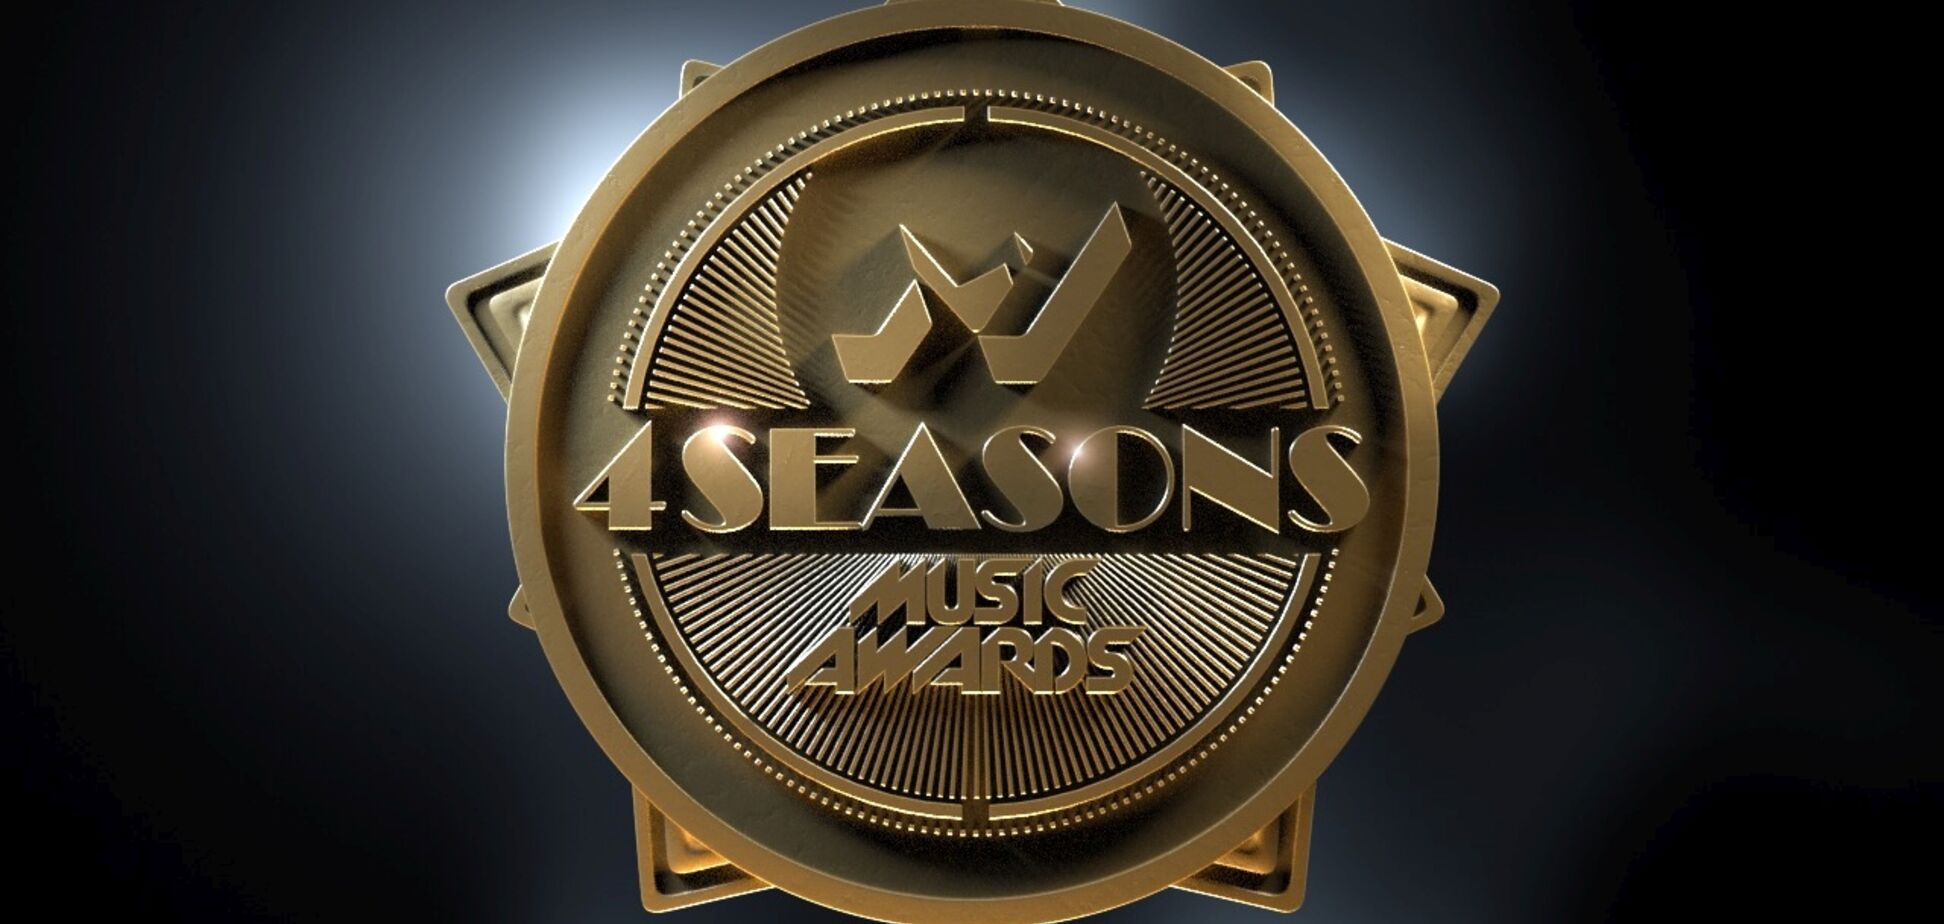 Телеканал М1 оголошує номінантів сезону 'Весна' від M1 Music Awards